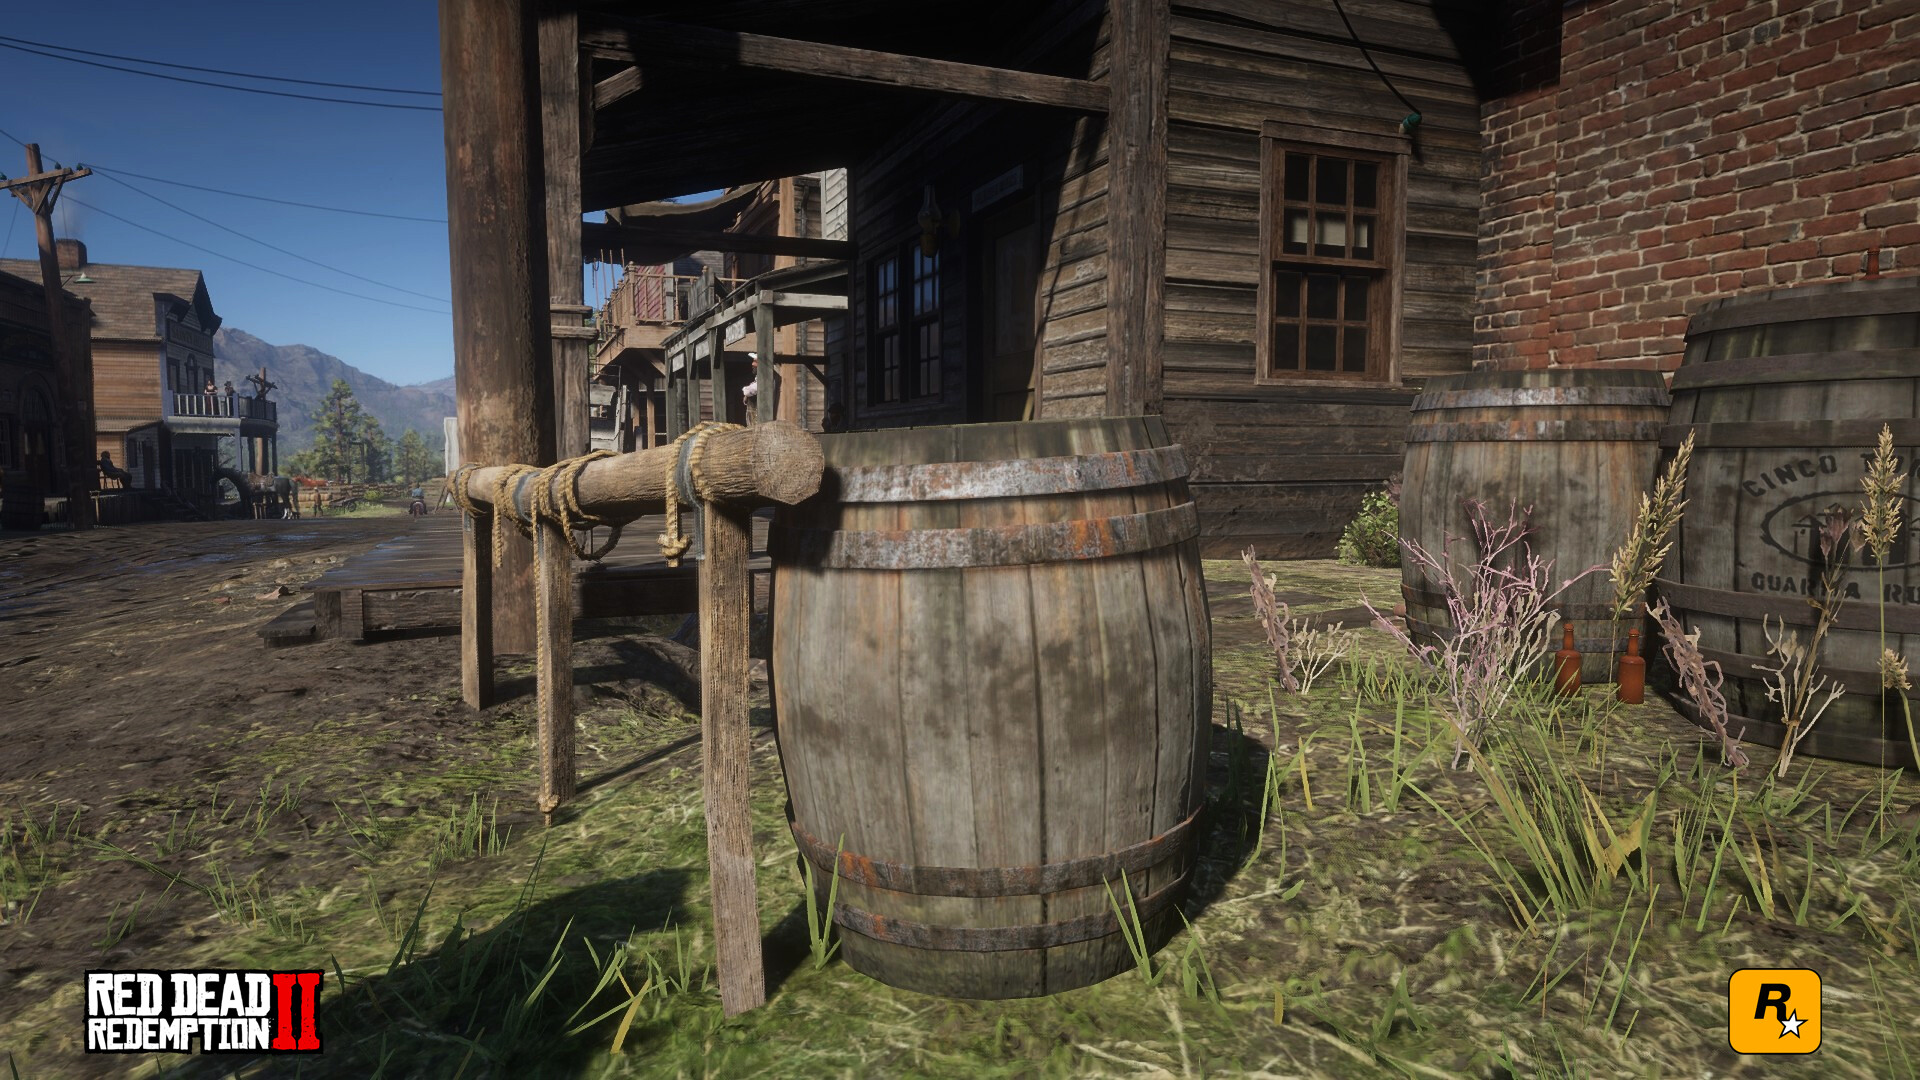 Red Dead Redemption II - Steam Vertical Grid by BrokenNoah on DeviantArt